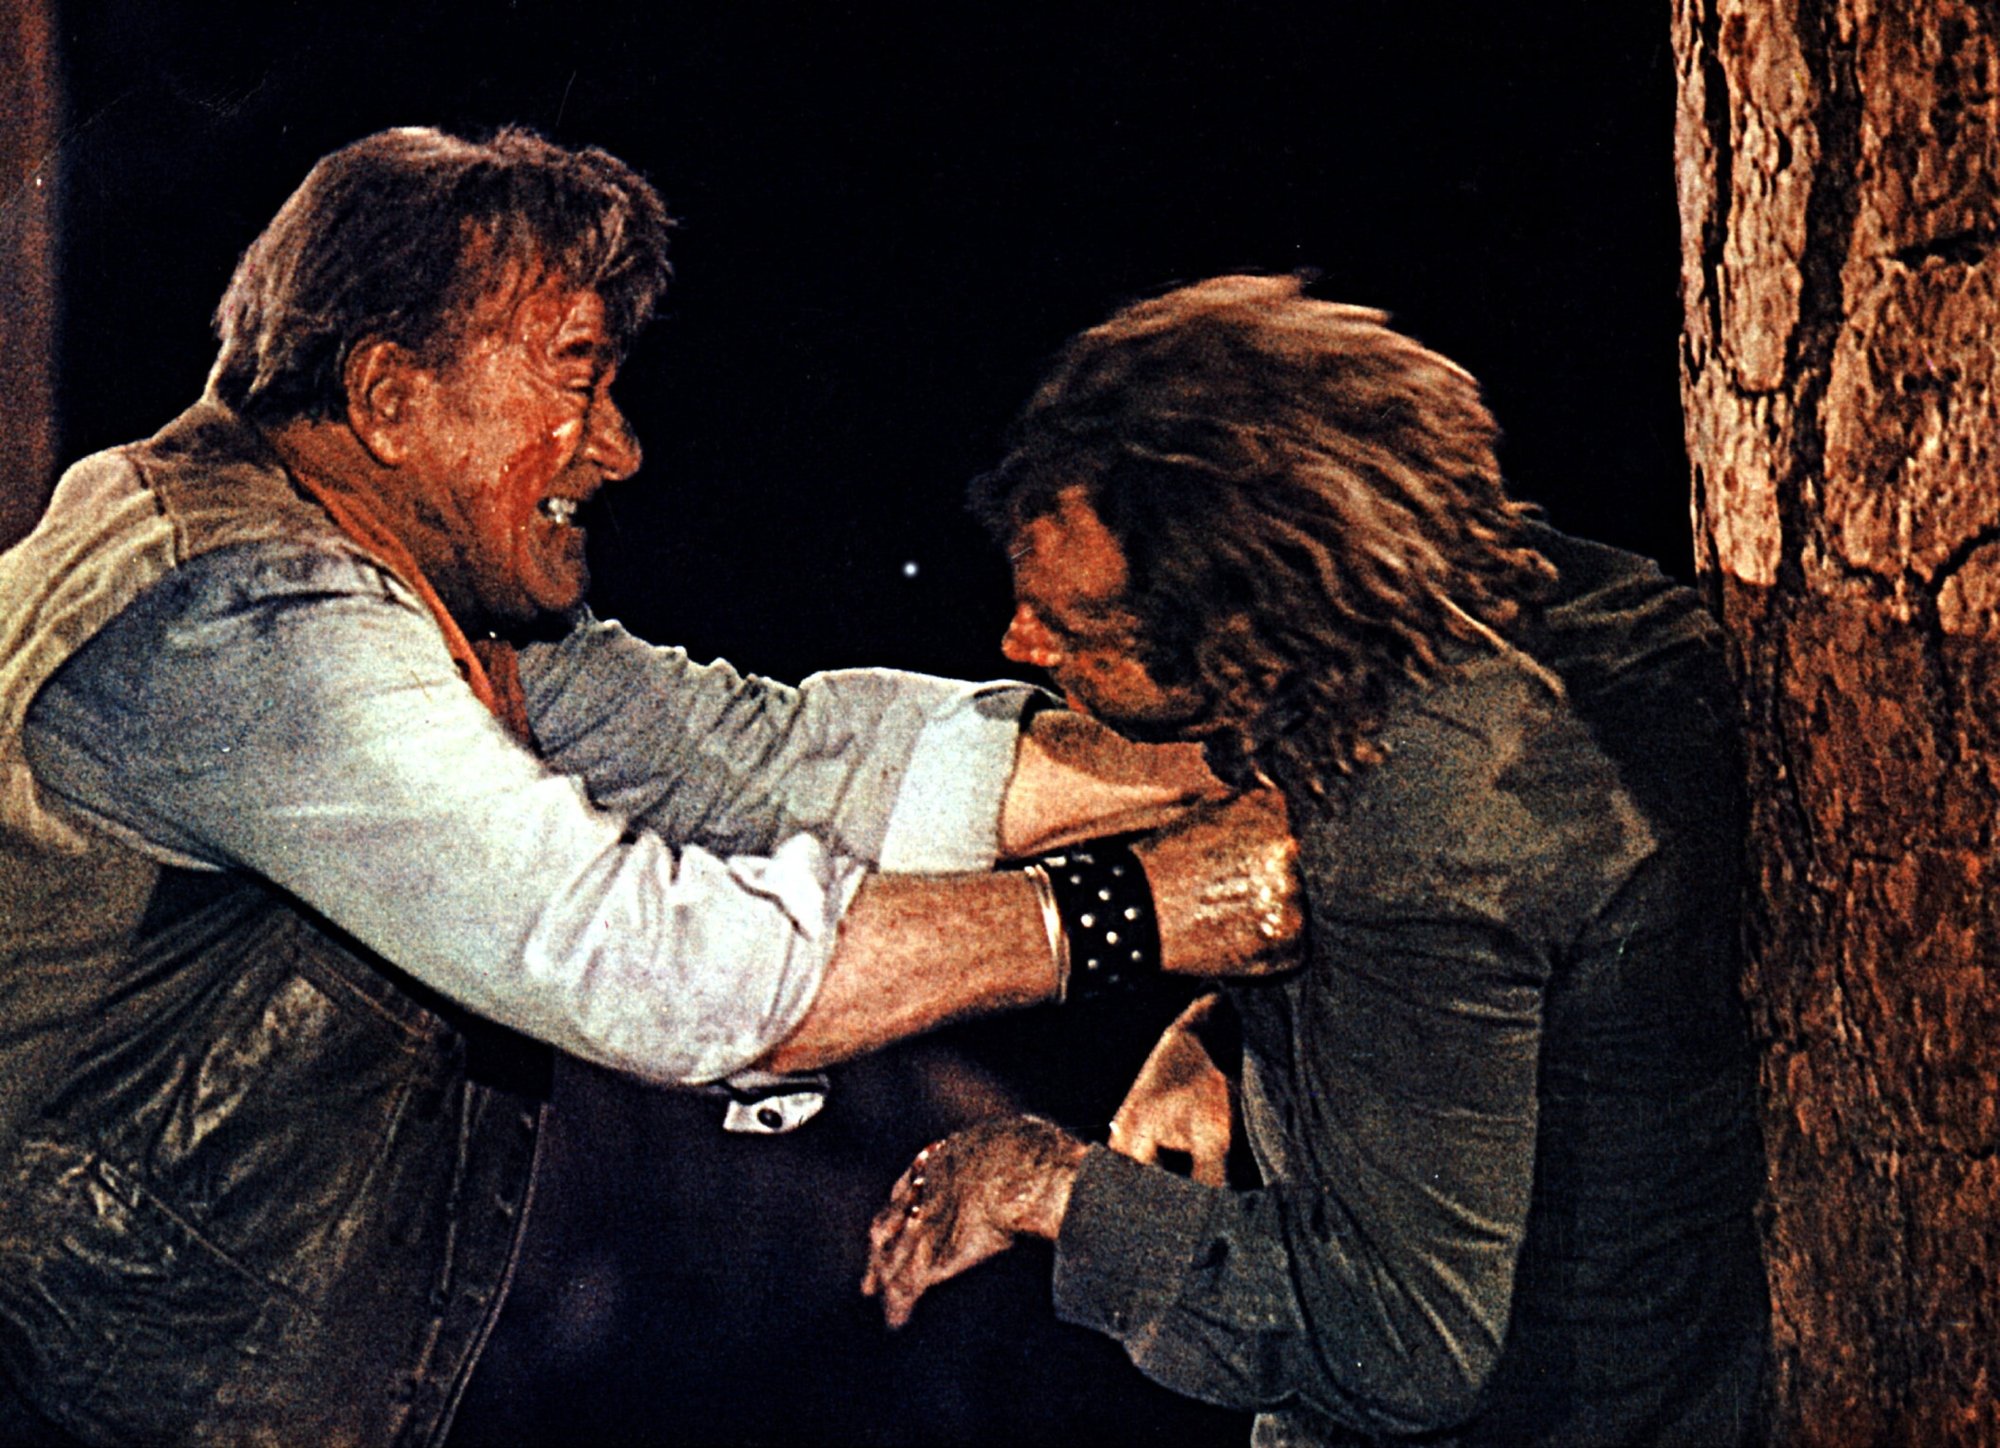 „The Cowboys“ John Wayne als Wil Andersen und Bruce Dern als Long Hair. Wayne schlägt Dern gegen einen Baum, beide tragen westliche Kleidung und werden zusammengeschlagen.